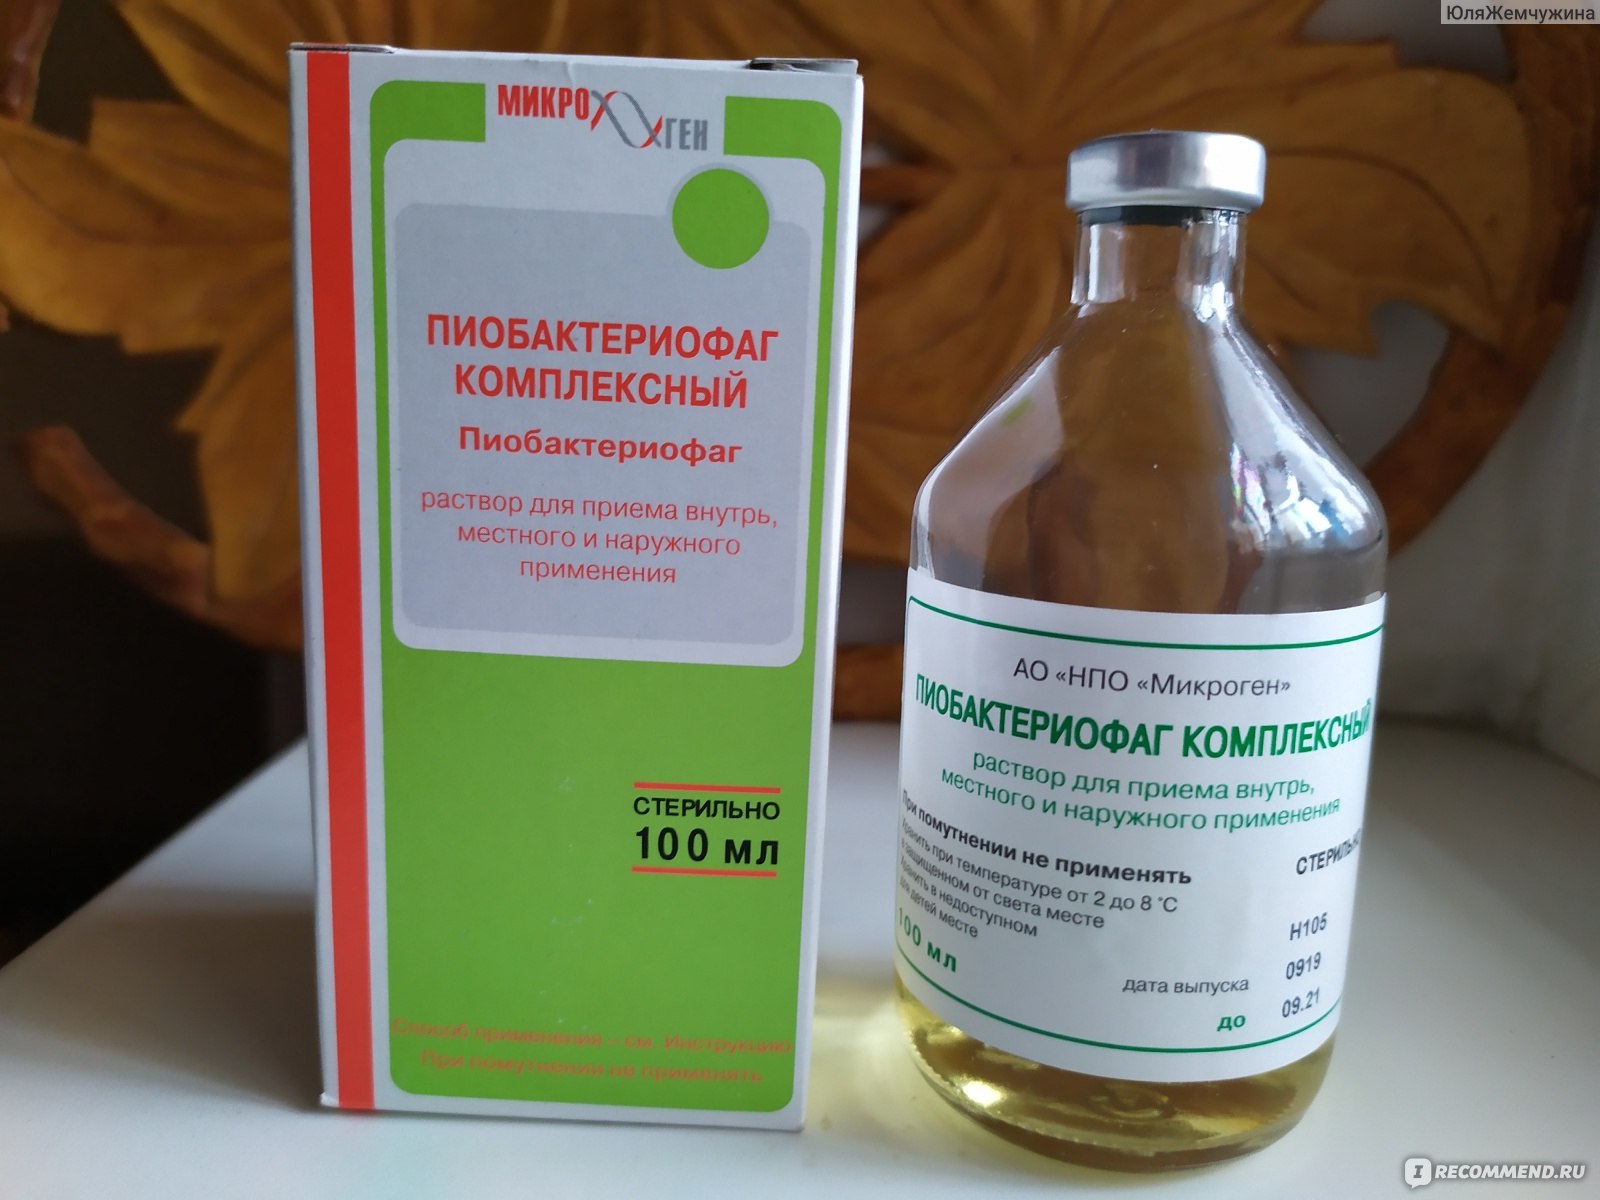 Антибактериальный препарат Пиобактериофаг комплексный жидкий .